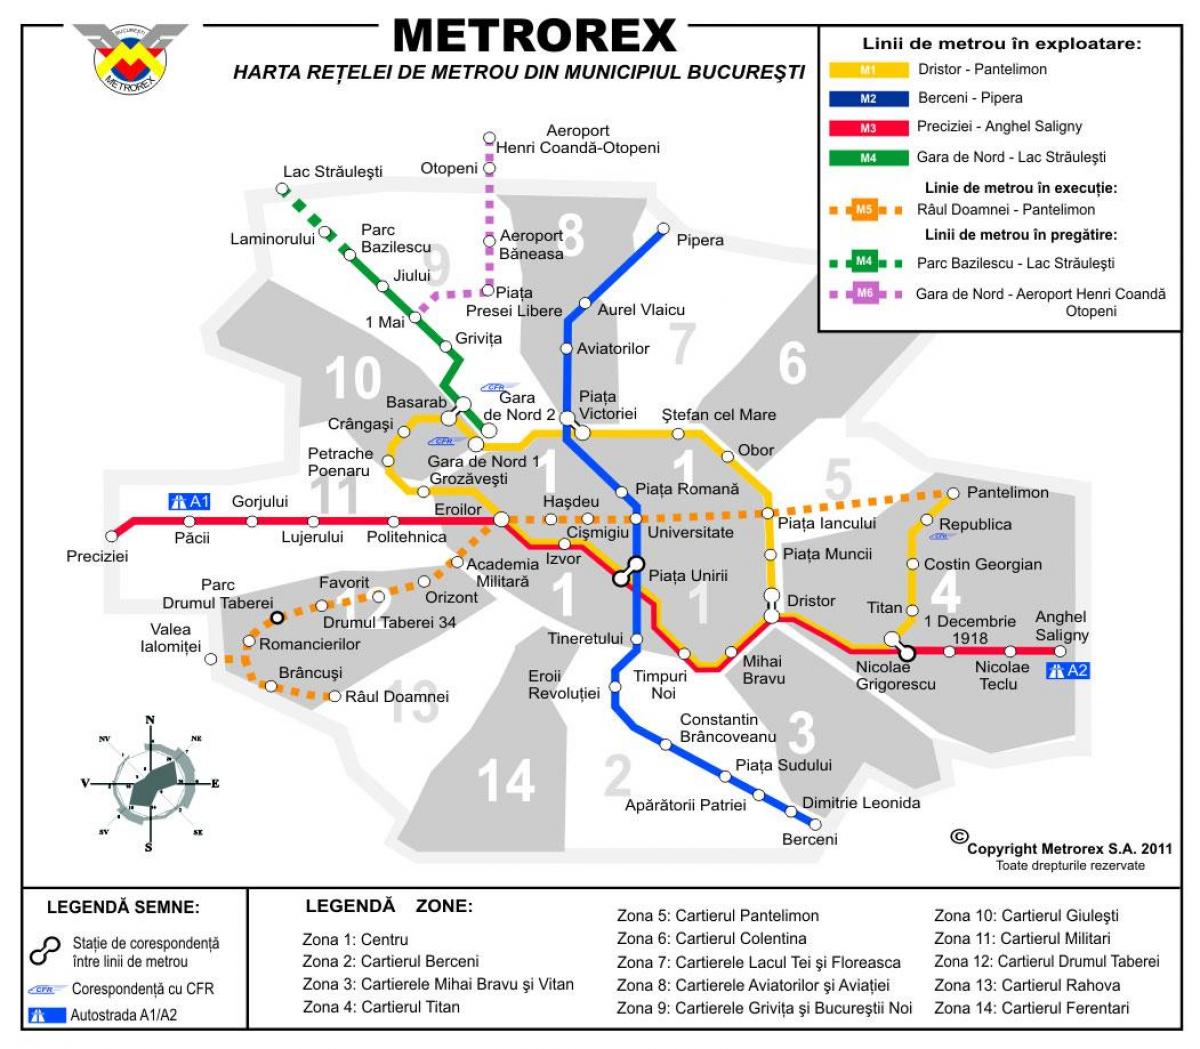 Mappa di metrorex 